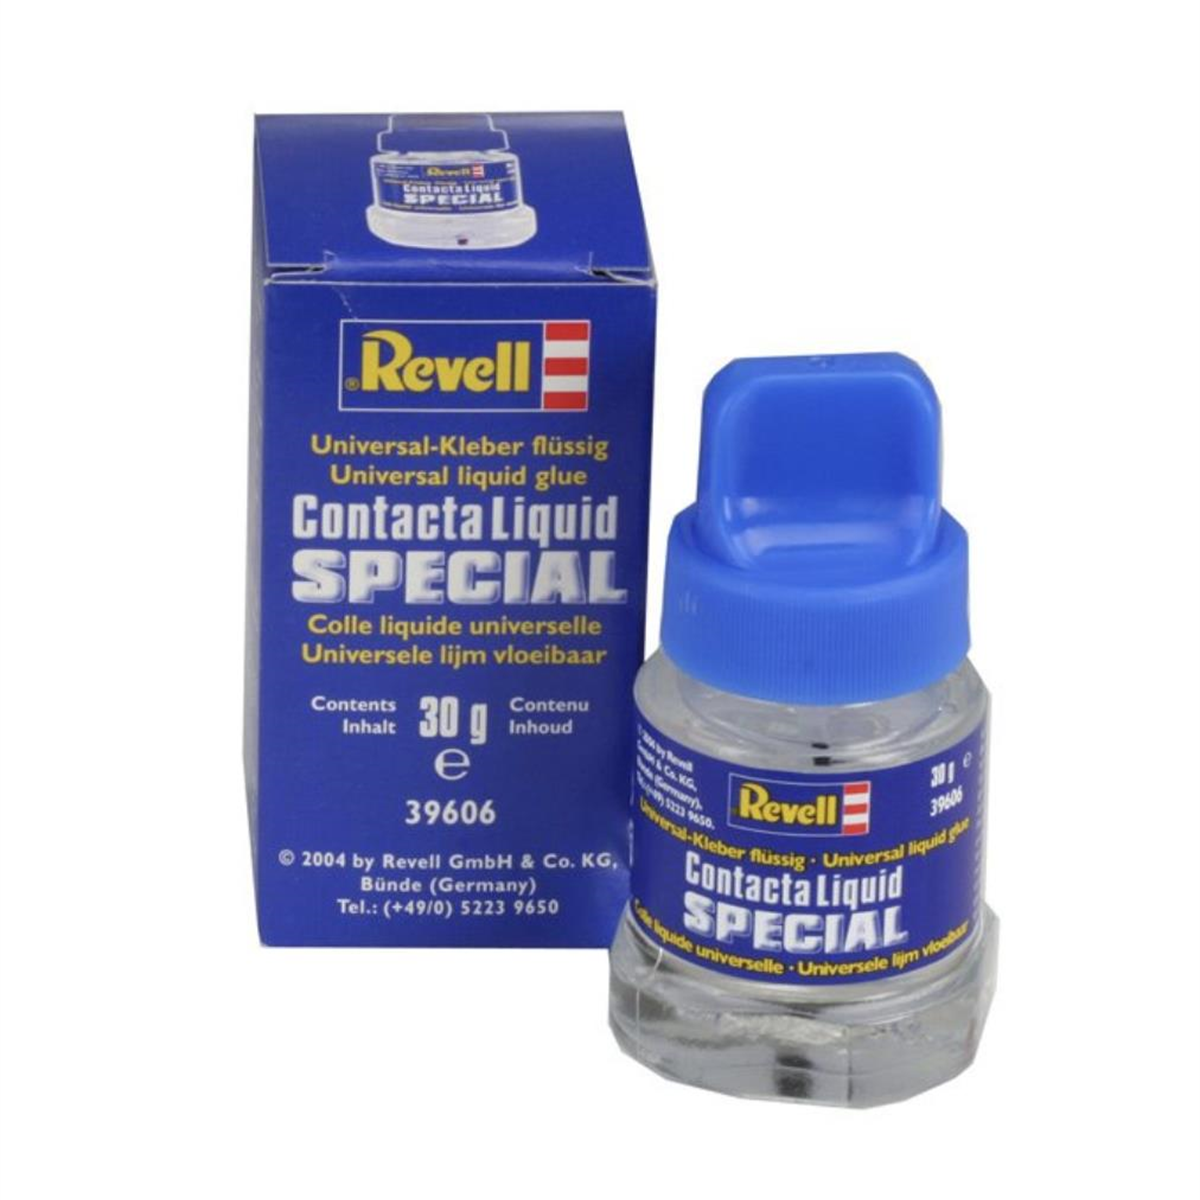 Revell Contacta Liquid Special 30G 39606 | Toysall